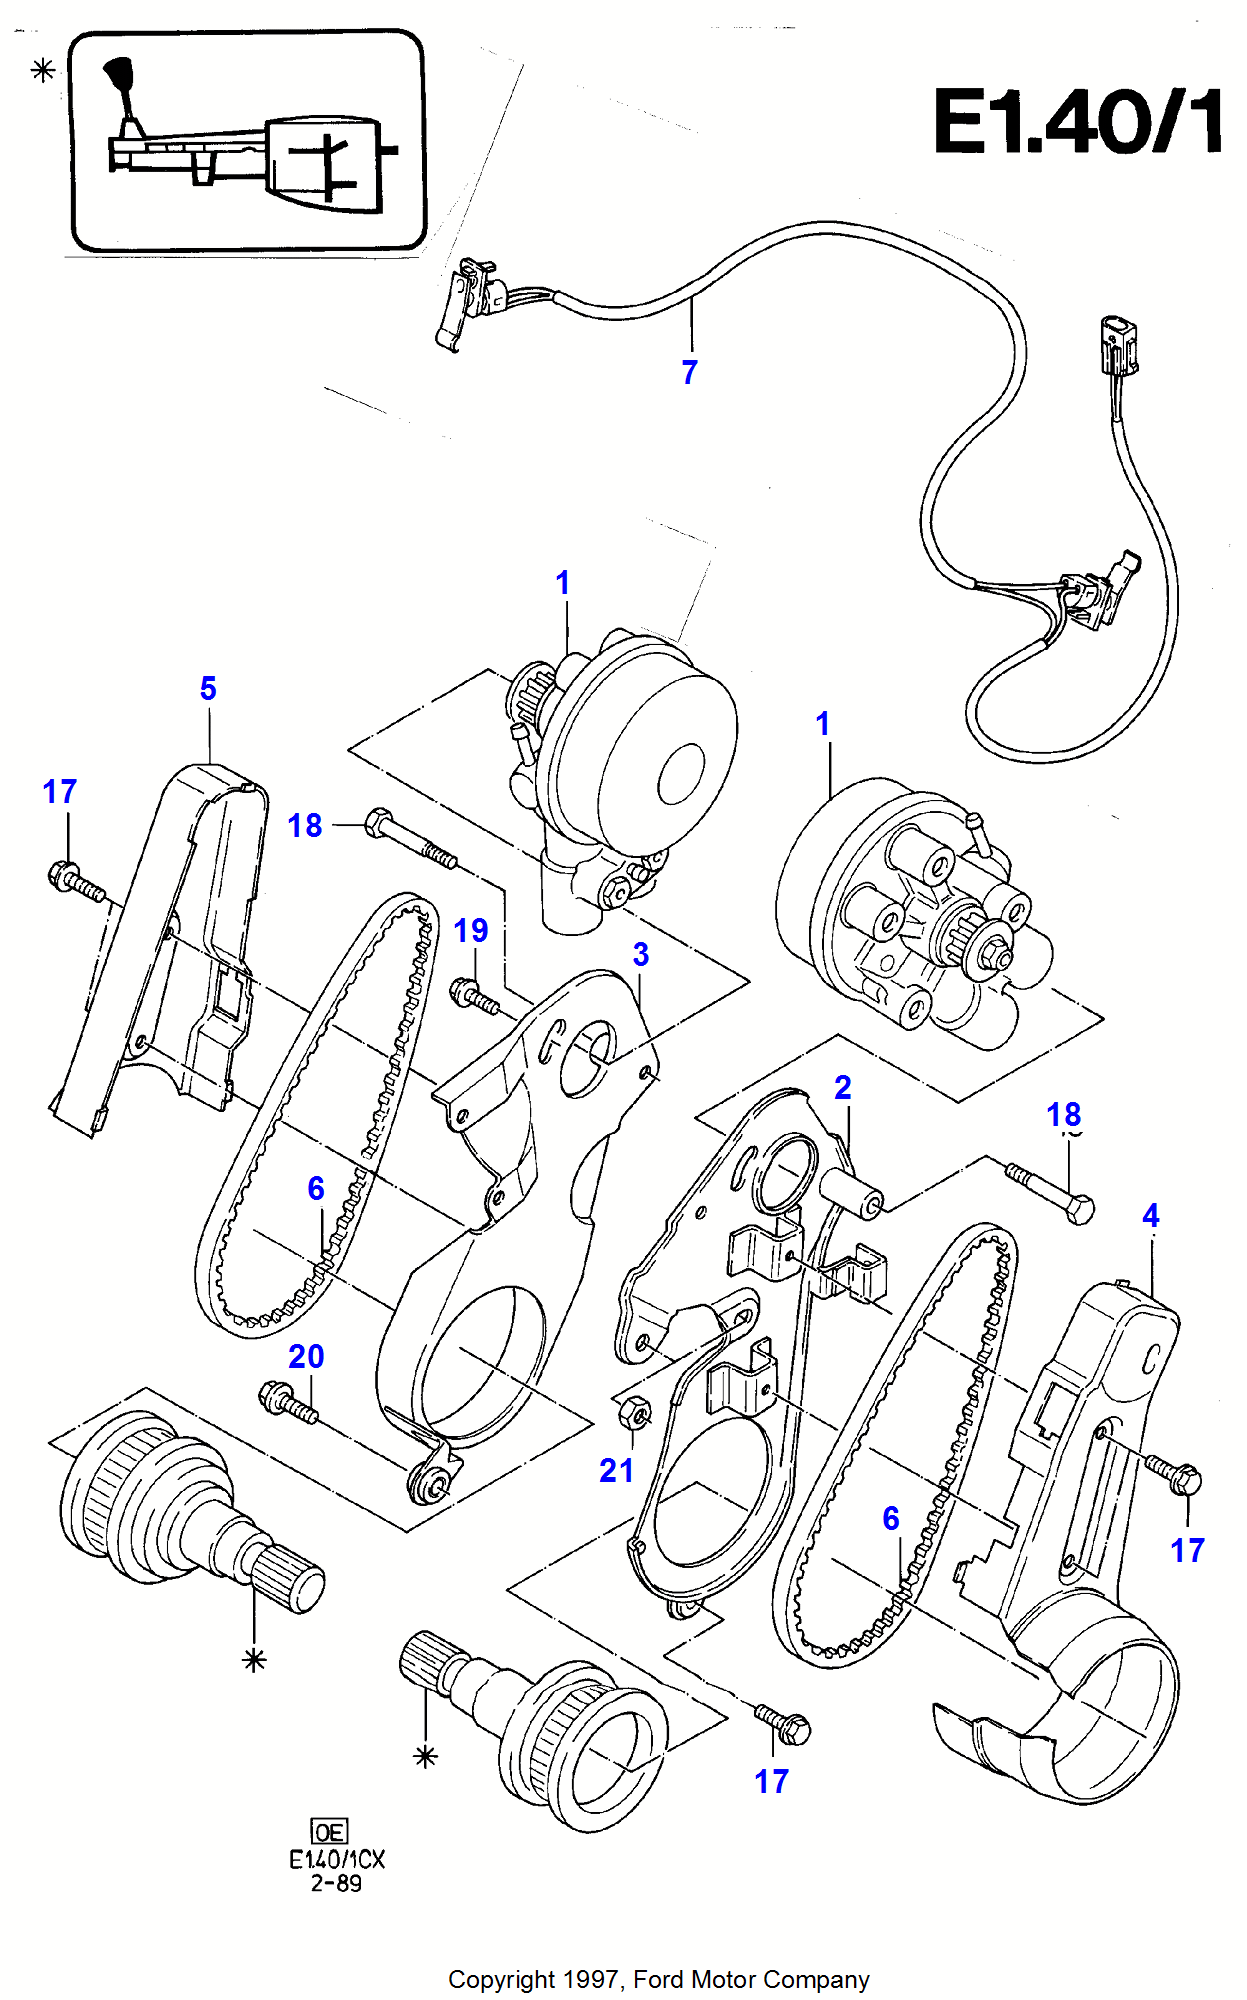 Anti-Lock Braking System Για Ford Fiesta Fiesta 1989-1996               (CX)